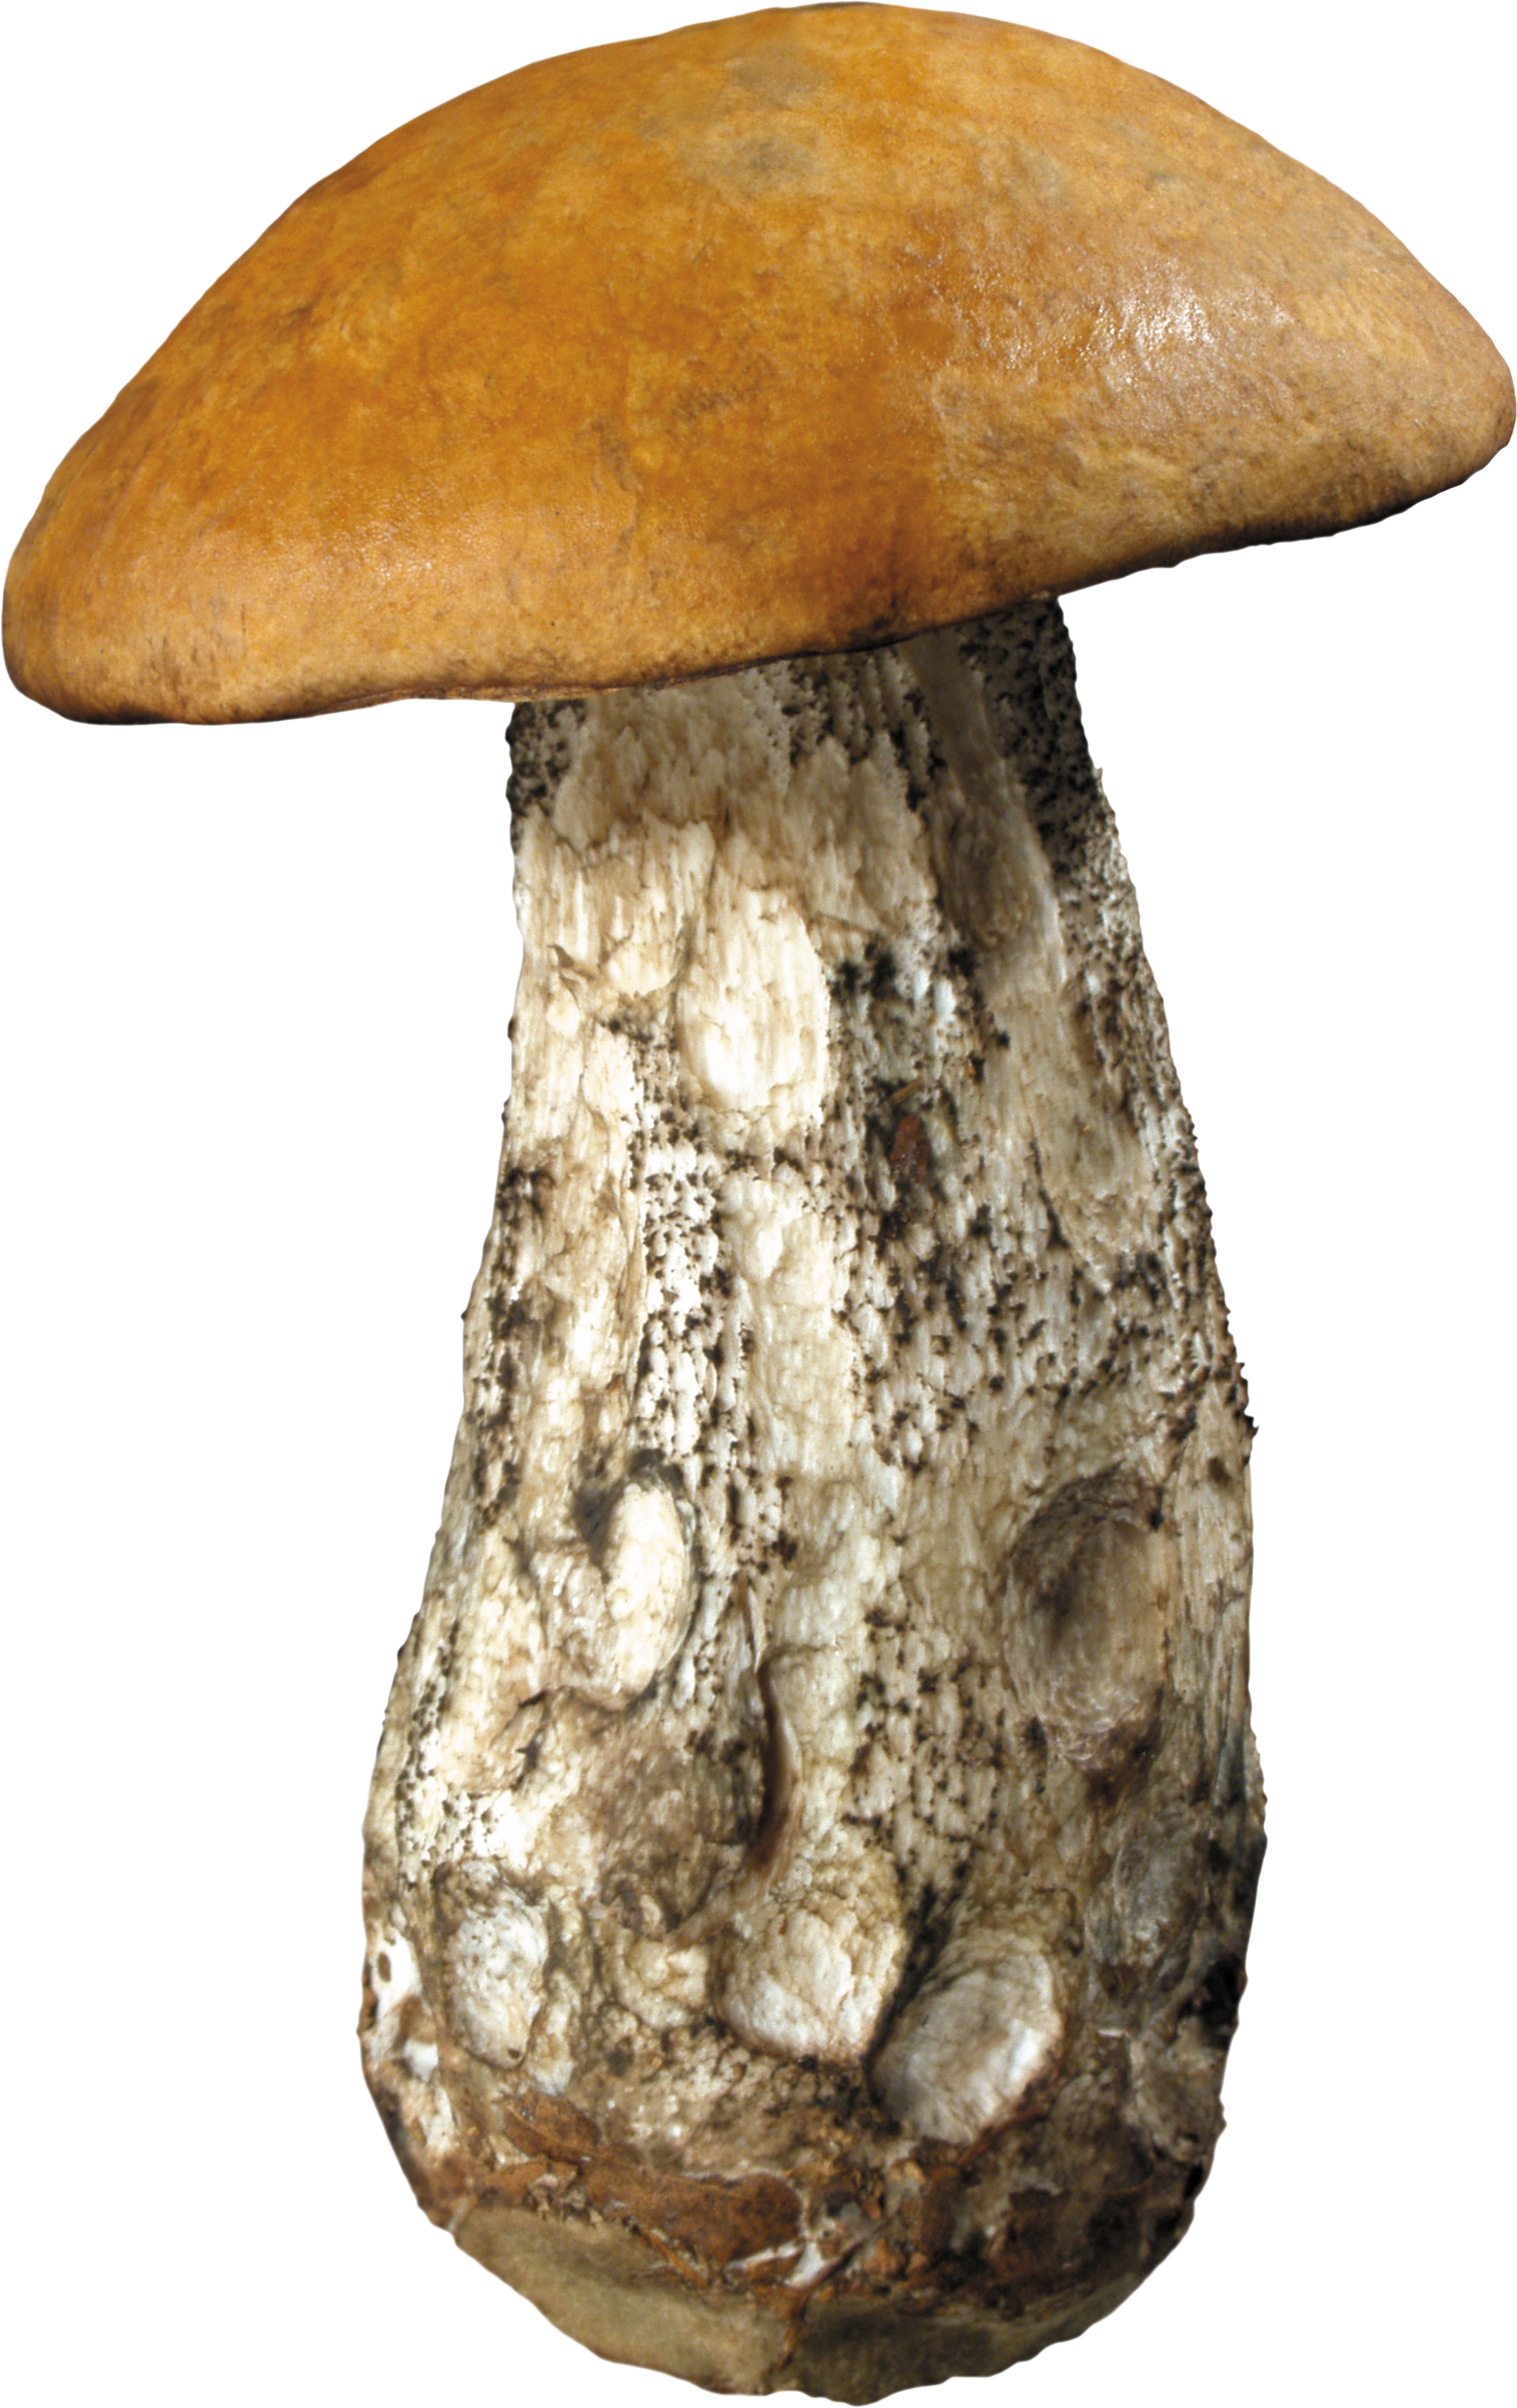 mushroom image #9093